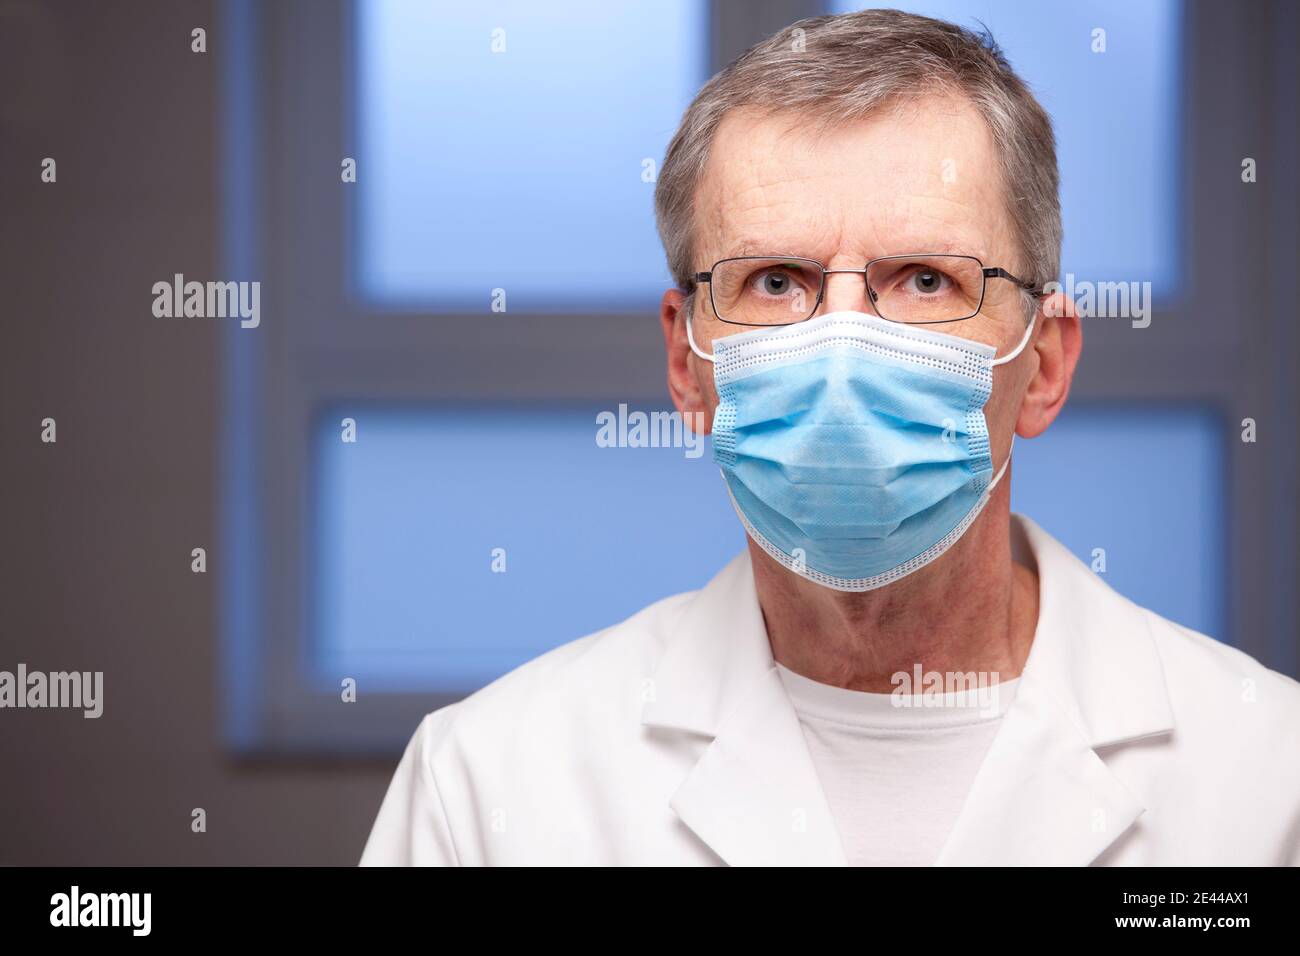 Portrait d'un médecin adulte avec masque chirurgical et vêtements blancs regarder l'appareil photo : concentrez-vous sur les yeux Banque D'Images